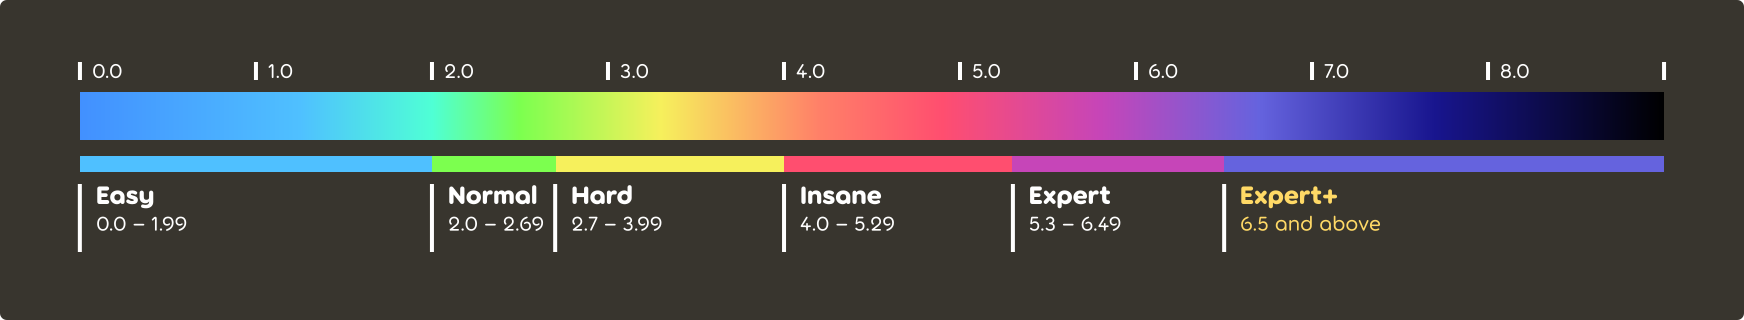 Espectro de color de calificación de dificultad de osu!